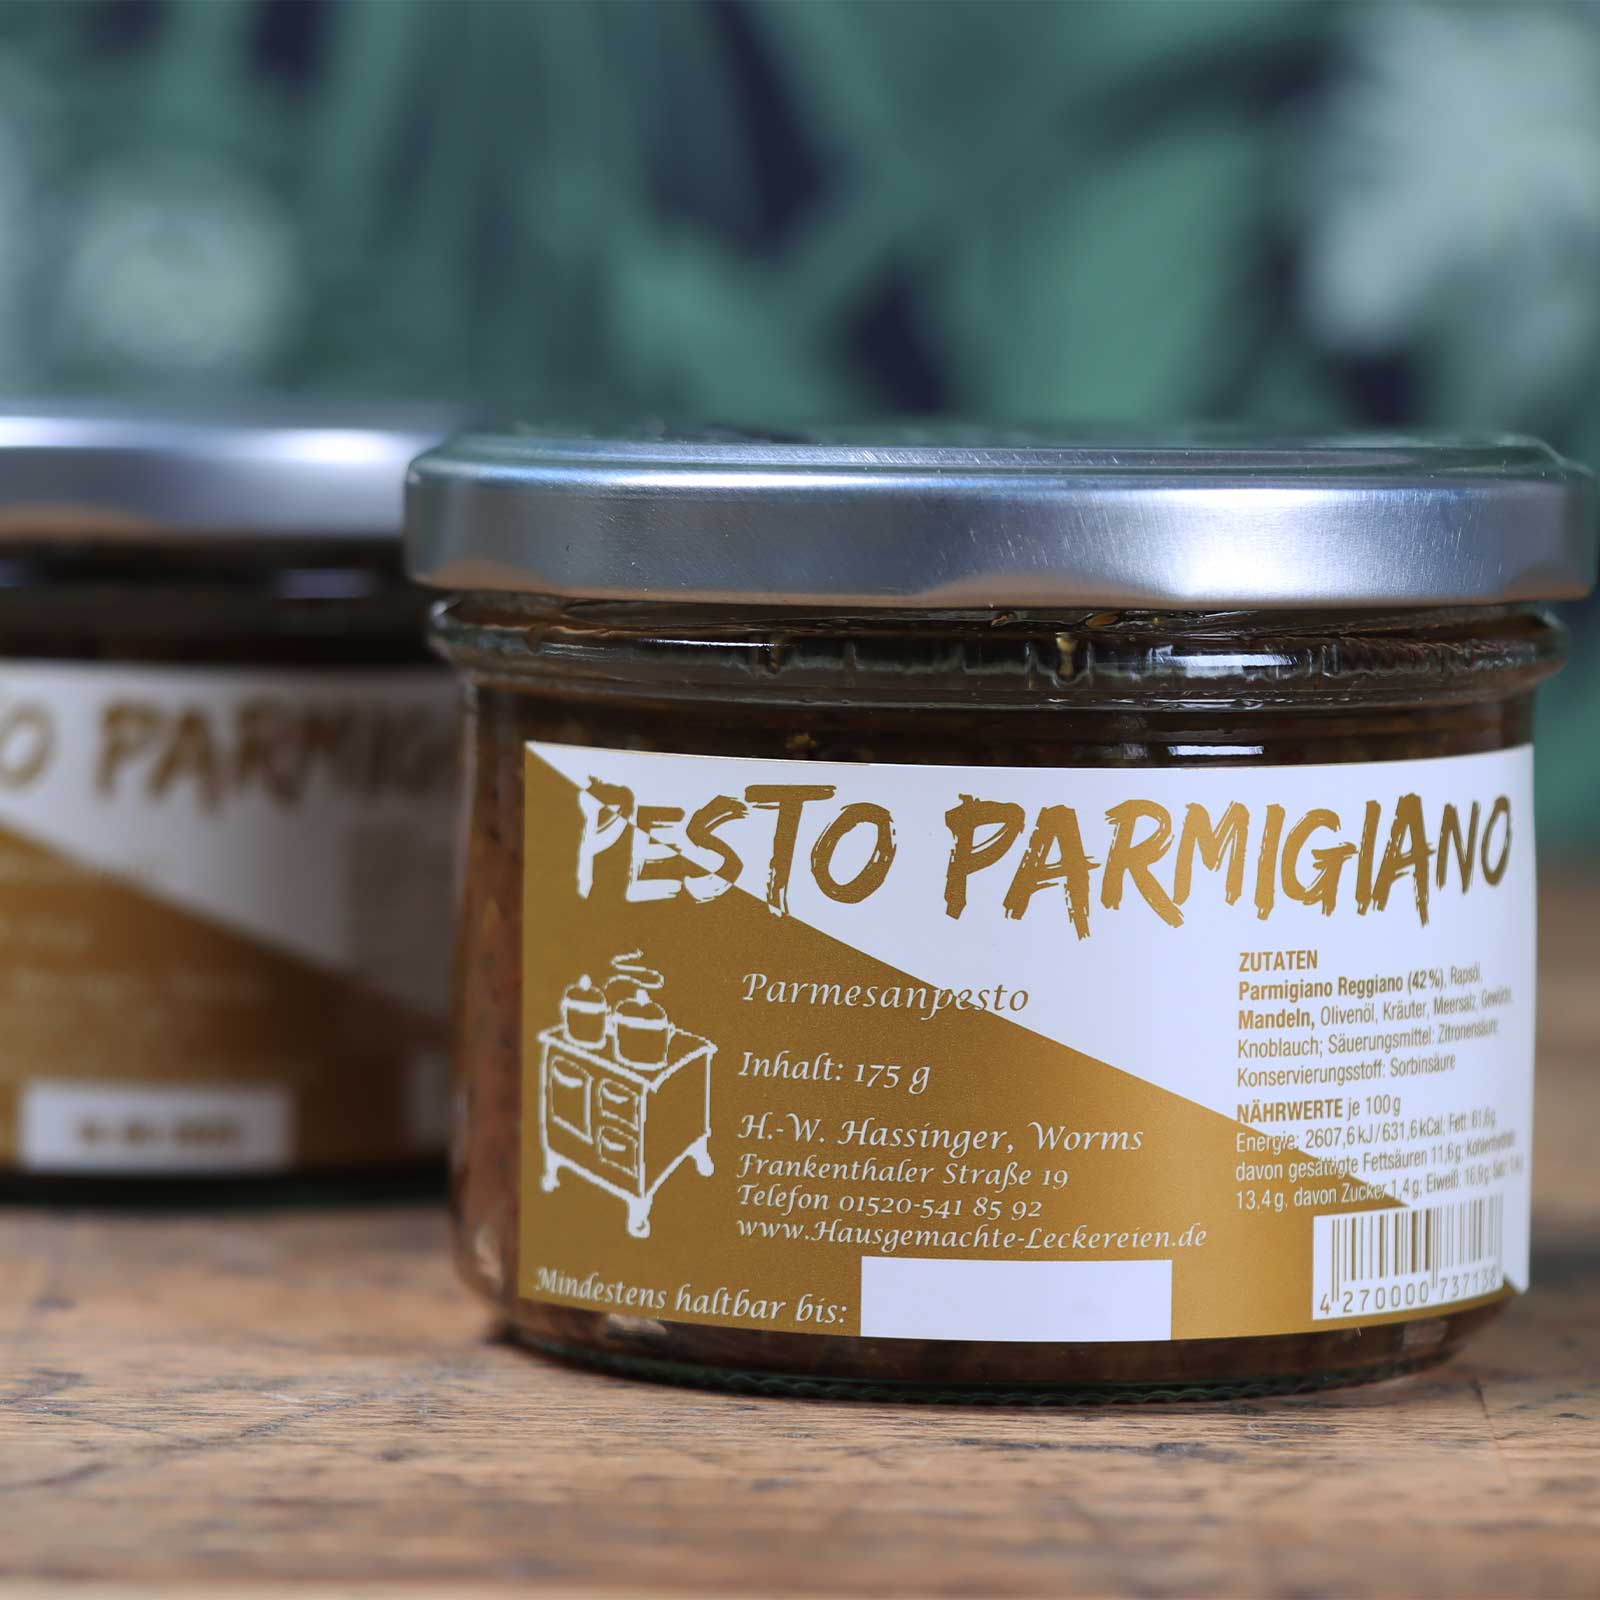 Pesto Parmigiano Ambientebild